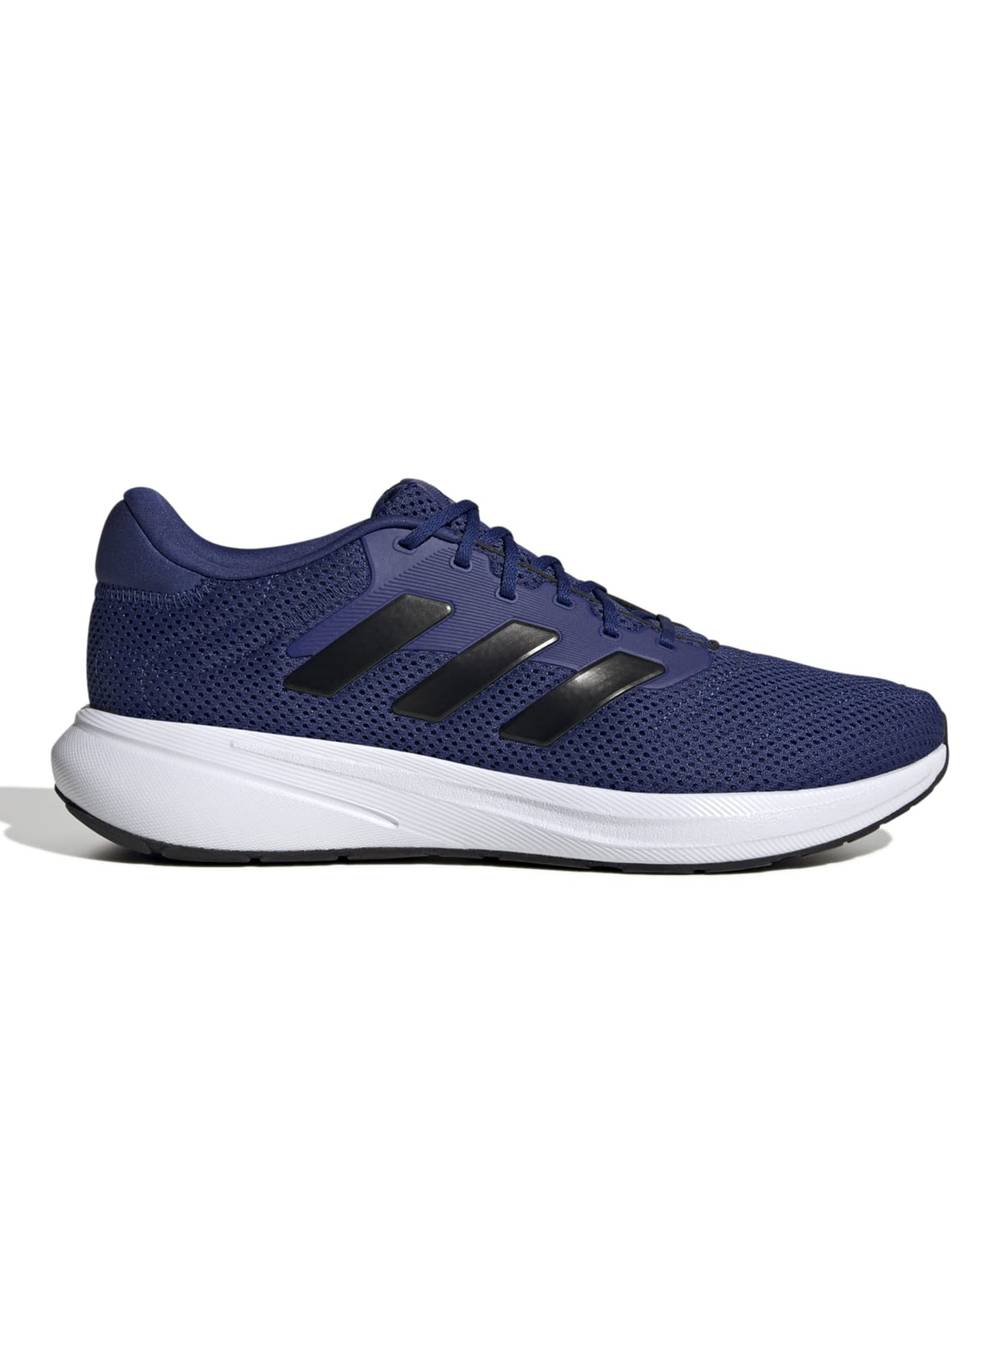 Adidas zapatilla running estilo response runner  unisex azul 'n 8